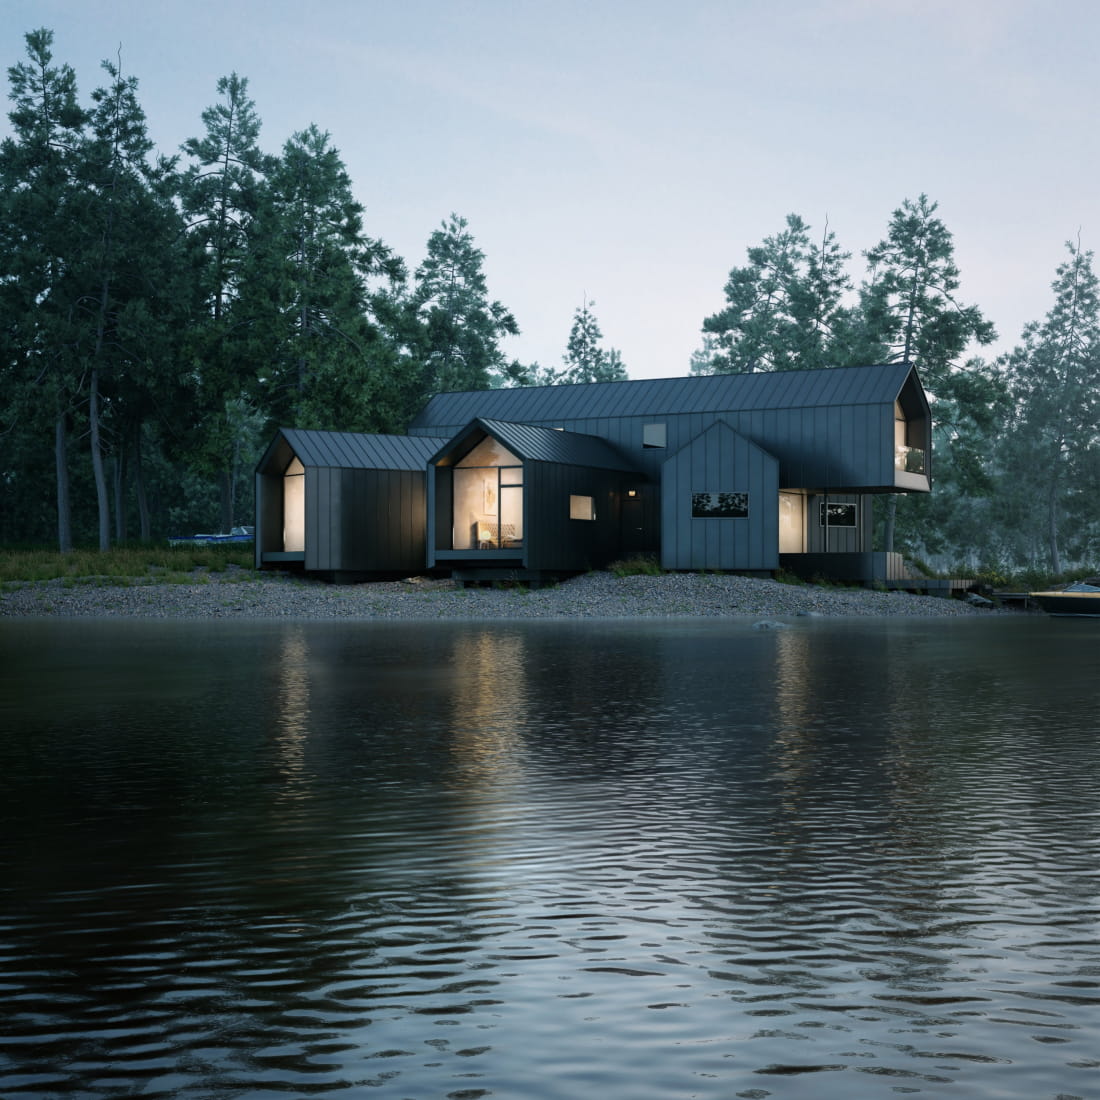 lake-house